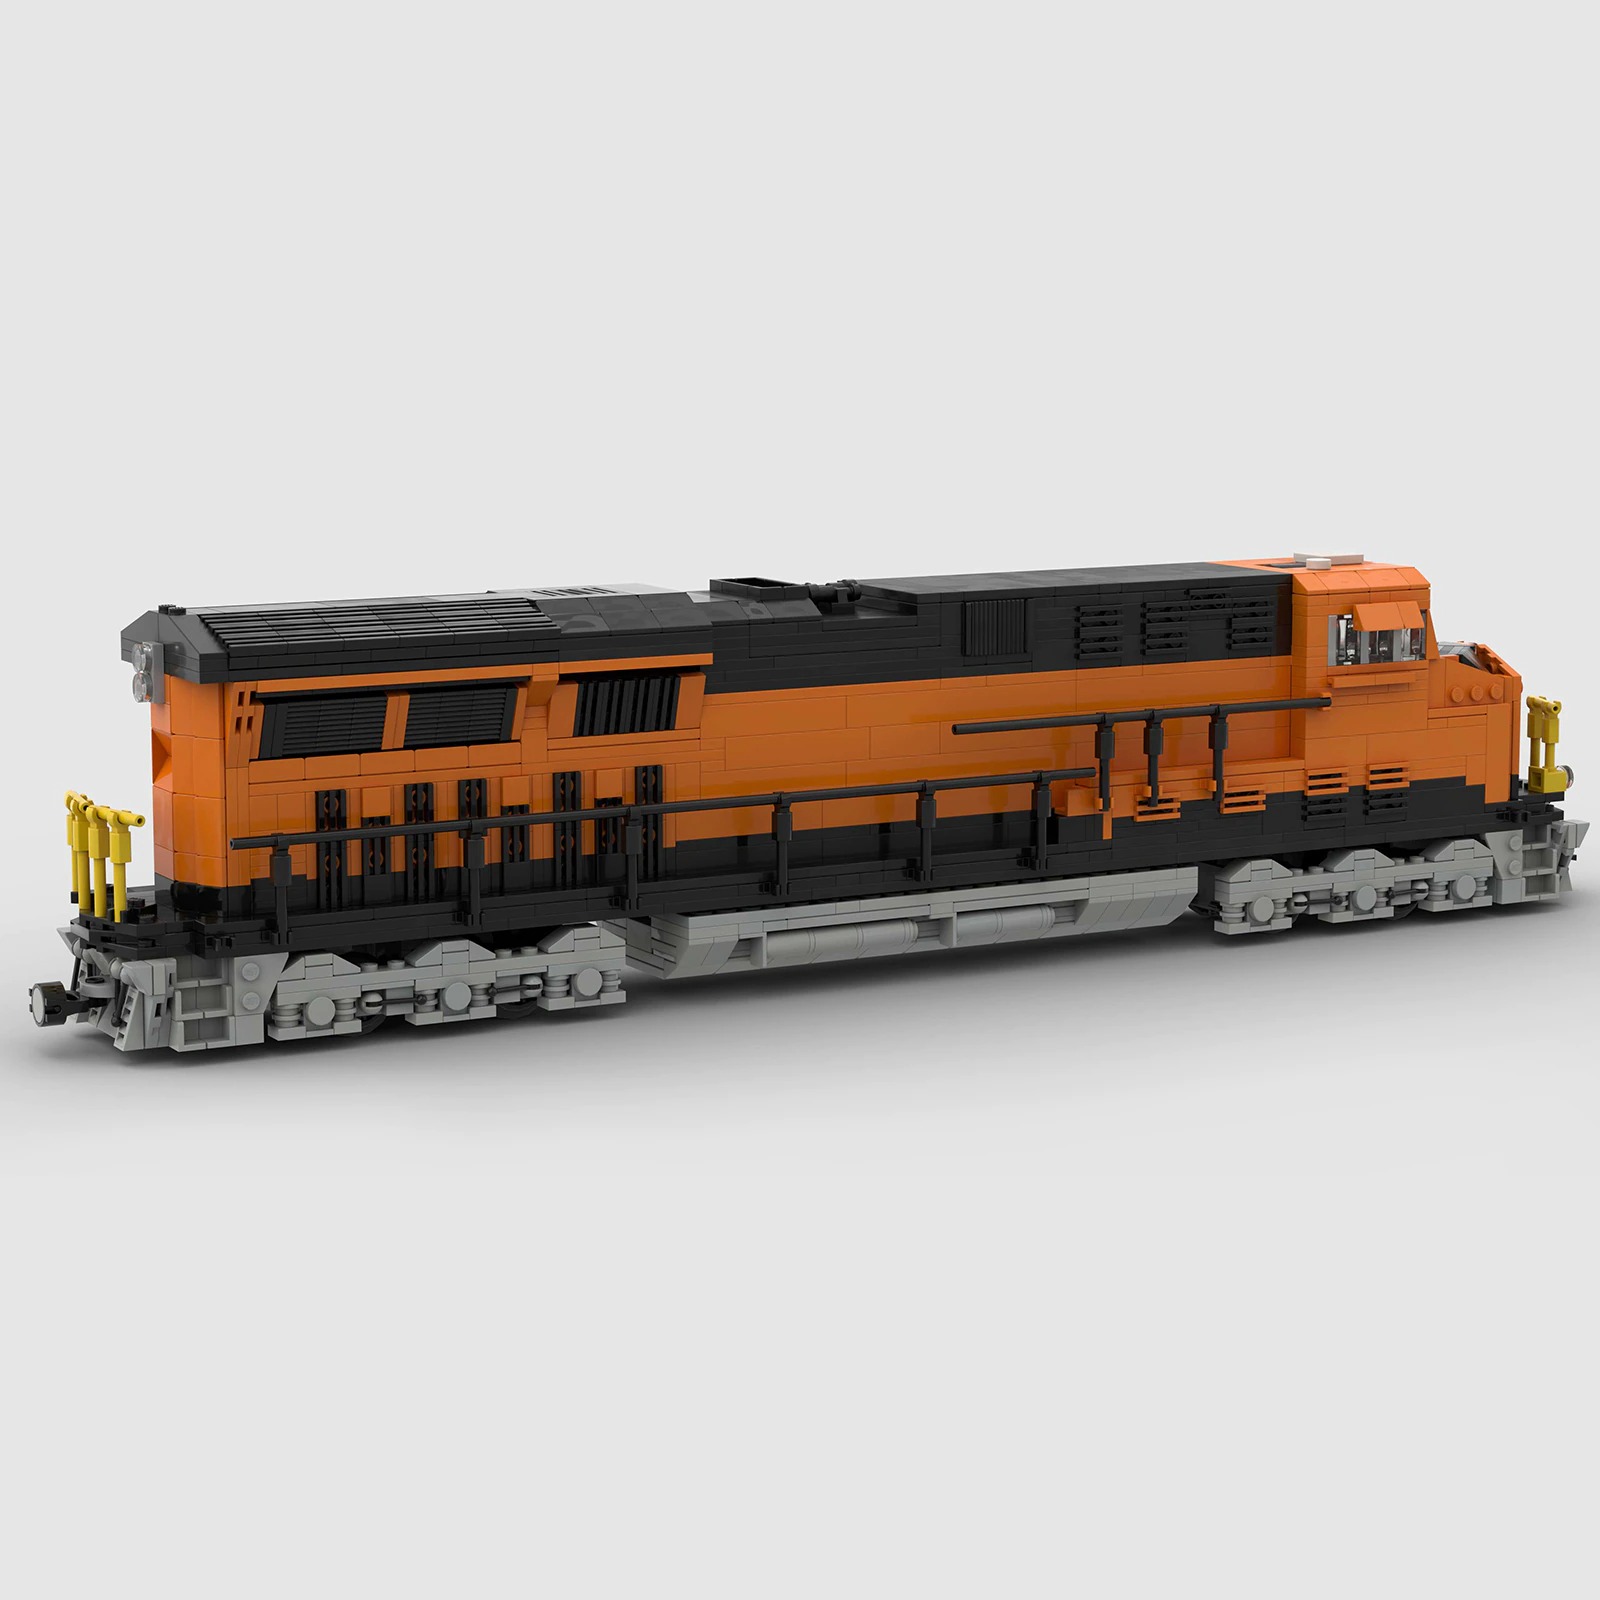 LEGO MOC Queensland Railways Class 2300 by www.bricks-on-rails.de